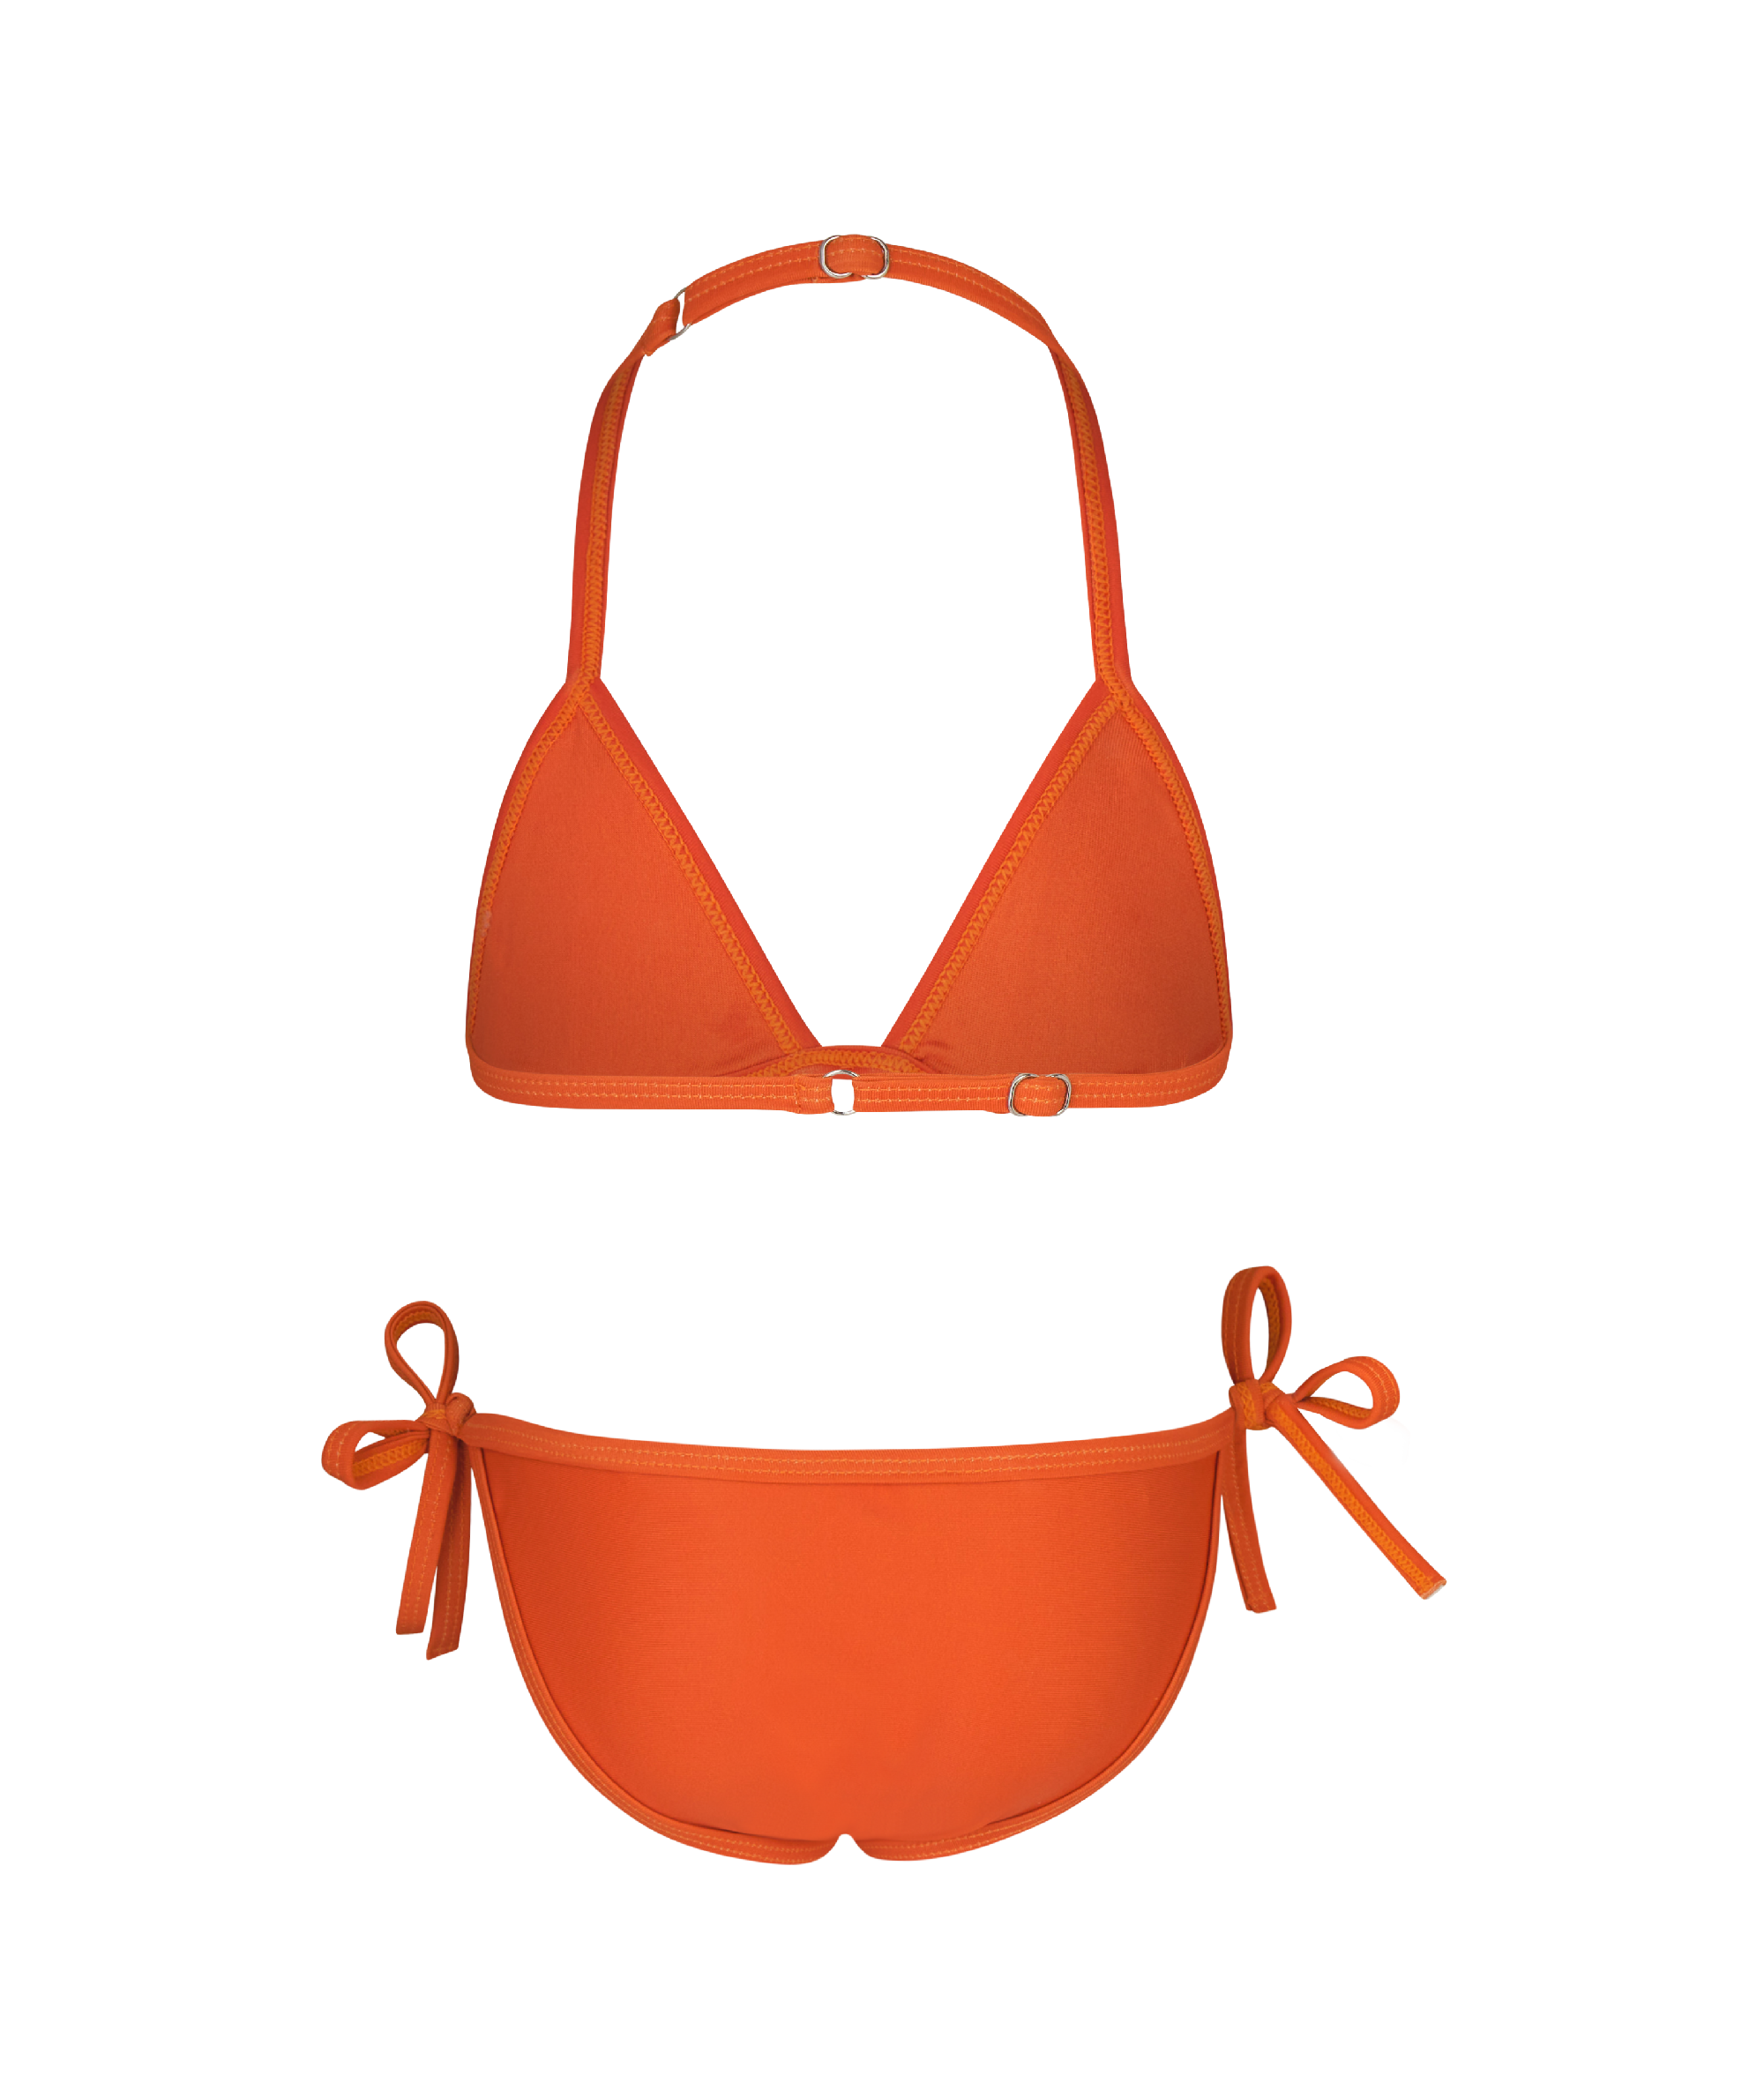 Kylie Swim Mini Swim Orange Two-Piece Triangle Top and Tie Bottoms, Back Side.